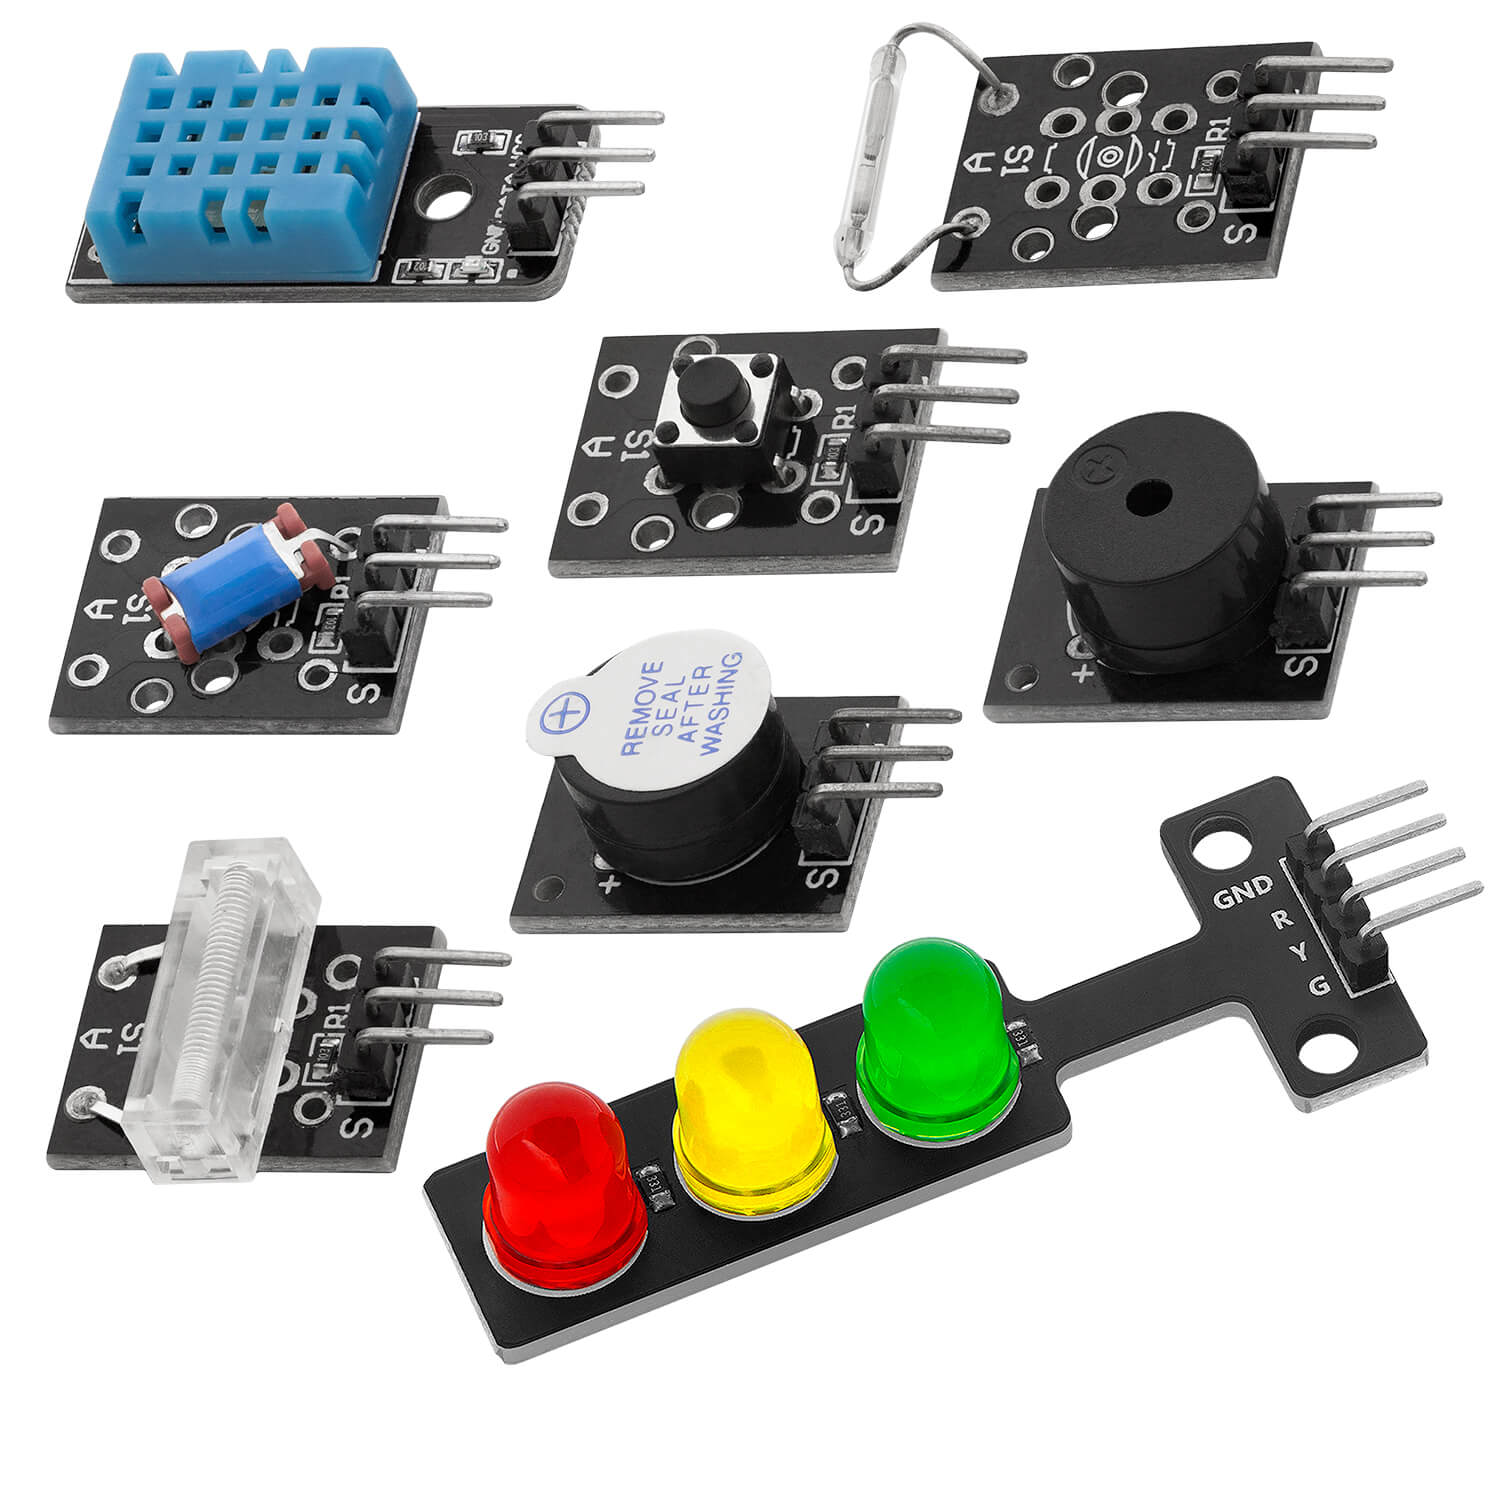 Kit de módulo de sensor 35 en 1 y kit de accesorios compatible con Arduino y Raspberry Pi